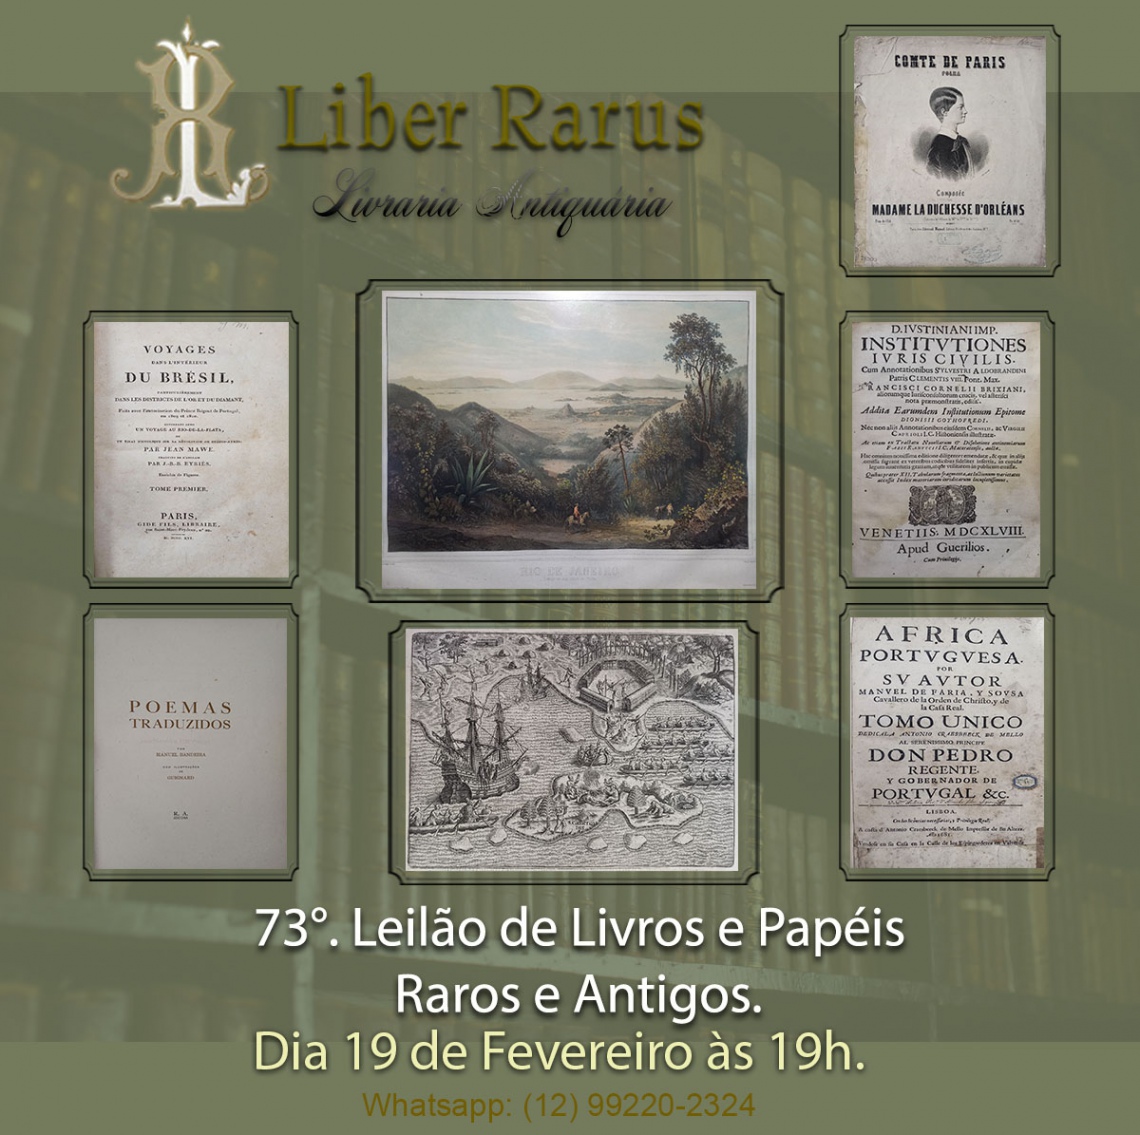 73º Leilão de Livros e Papéis Raros e Antigos - Liber Rarus - 19/02/2025 - 19h00